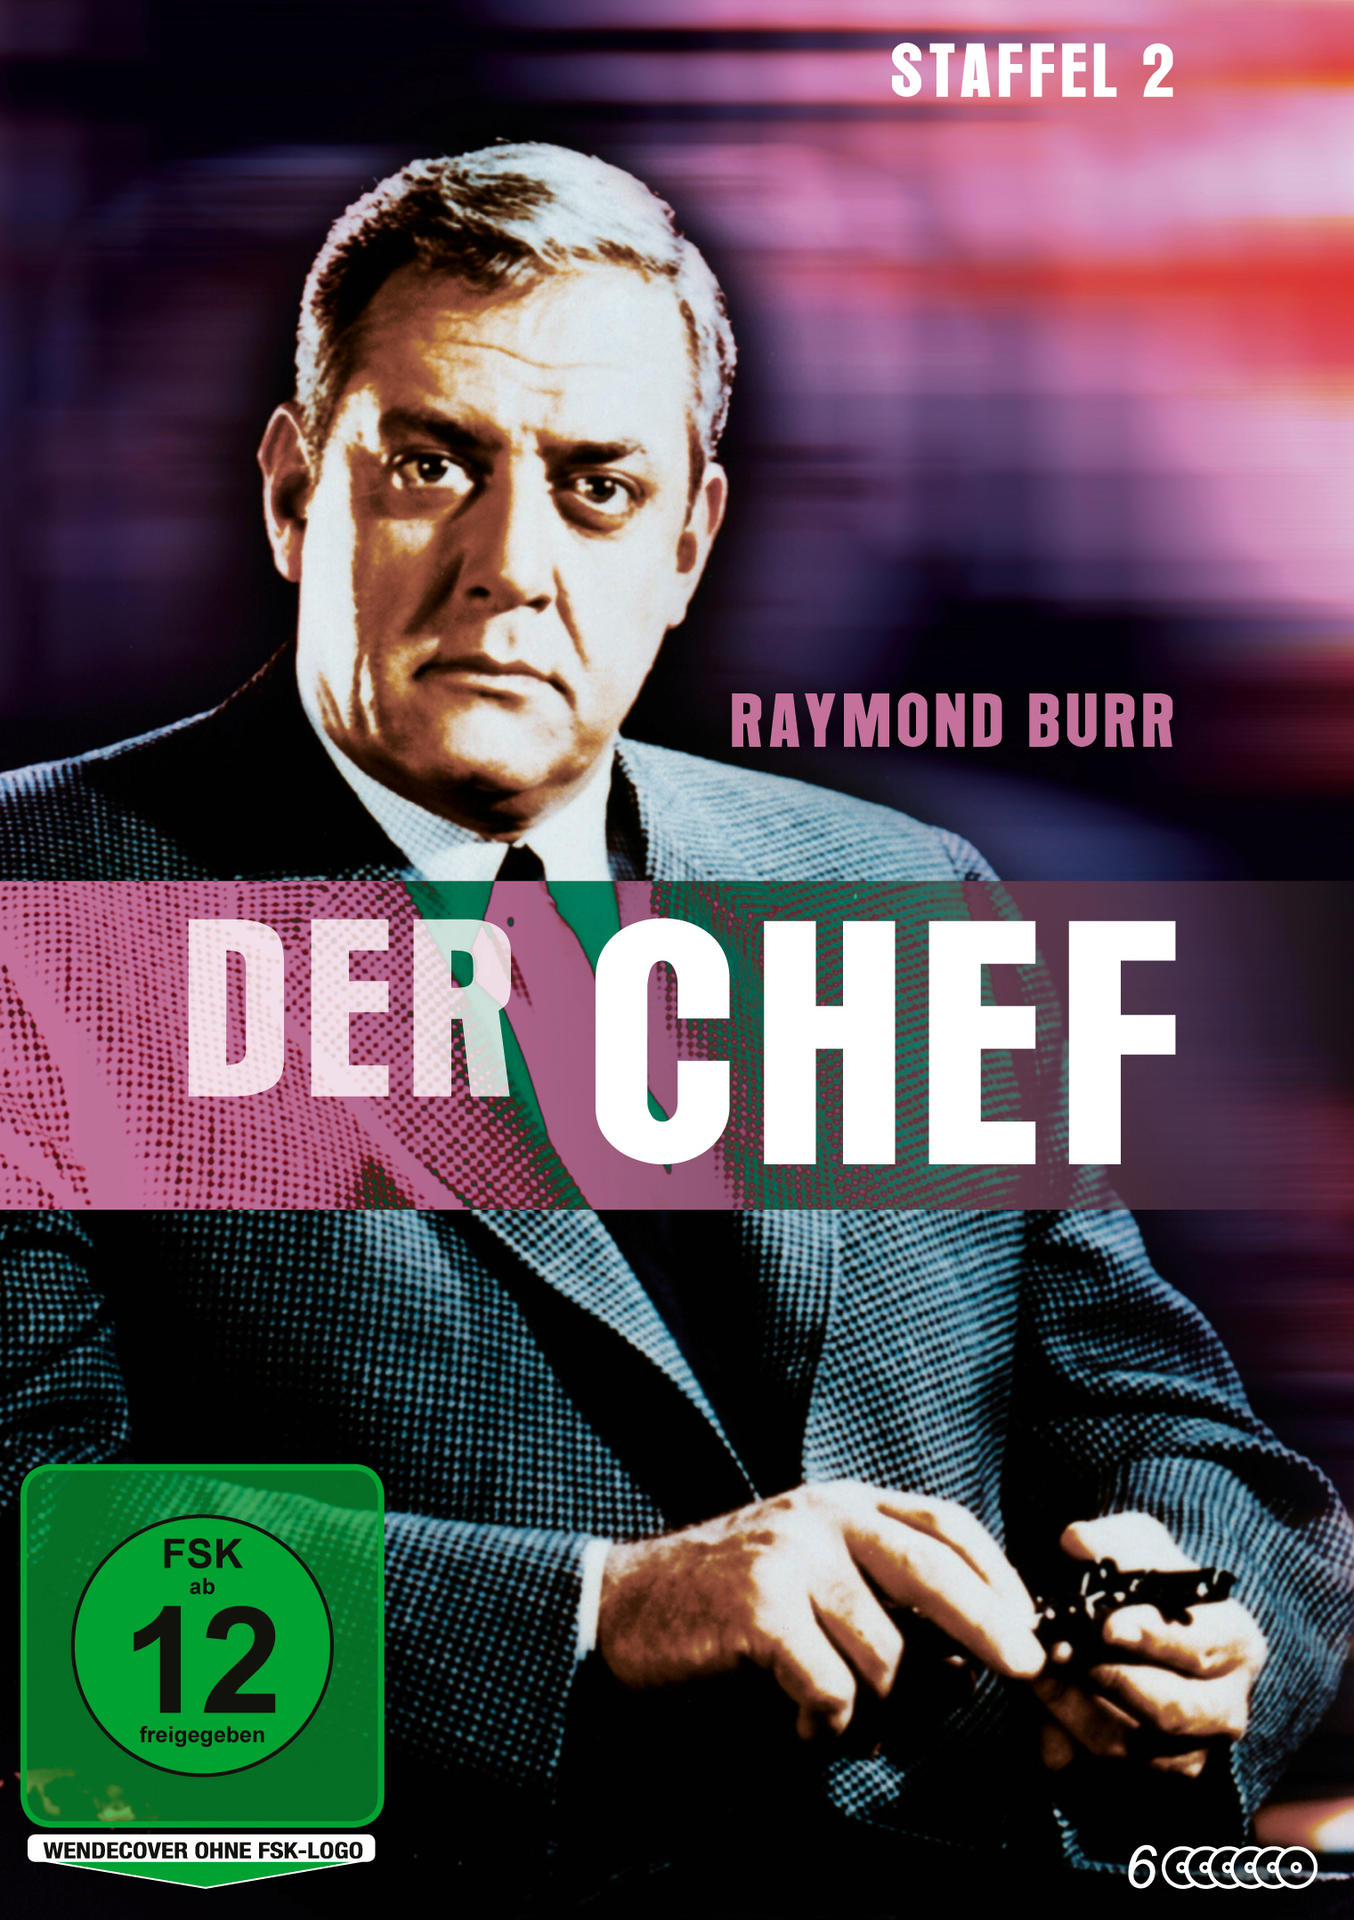 Staffel Chef DVD Der - 2